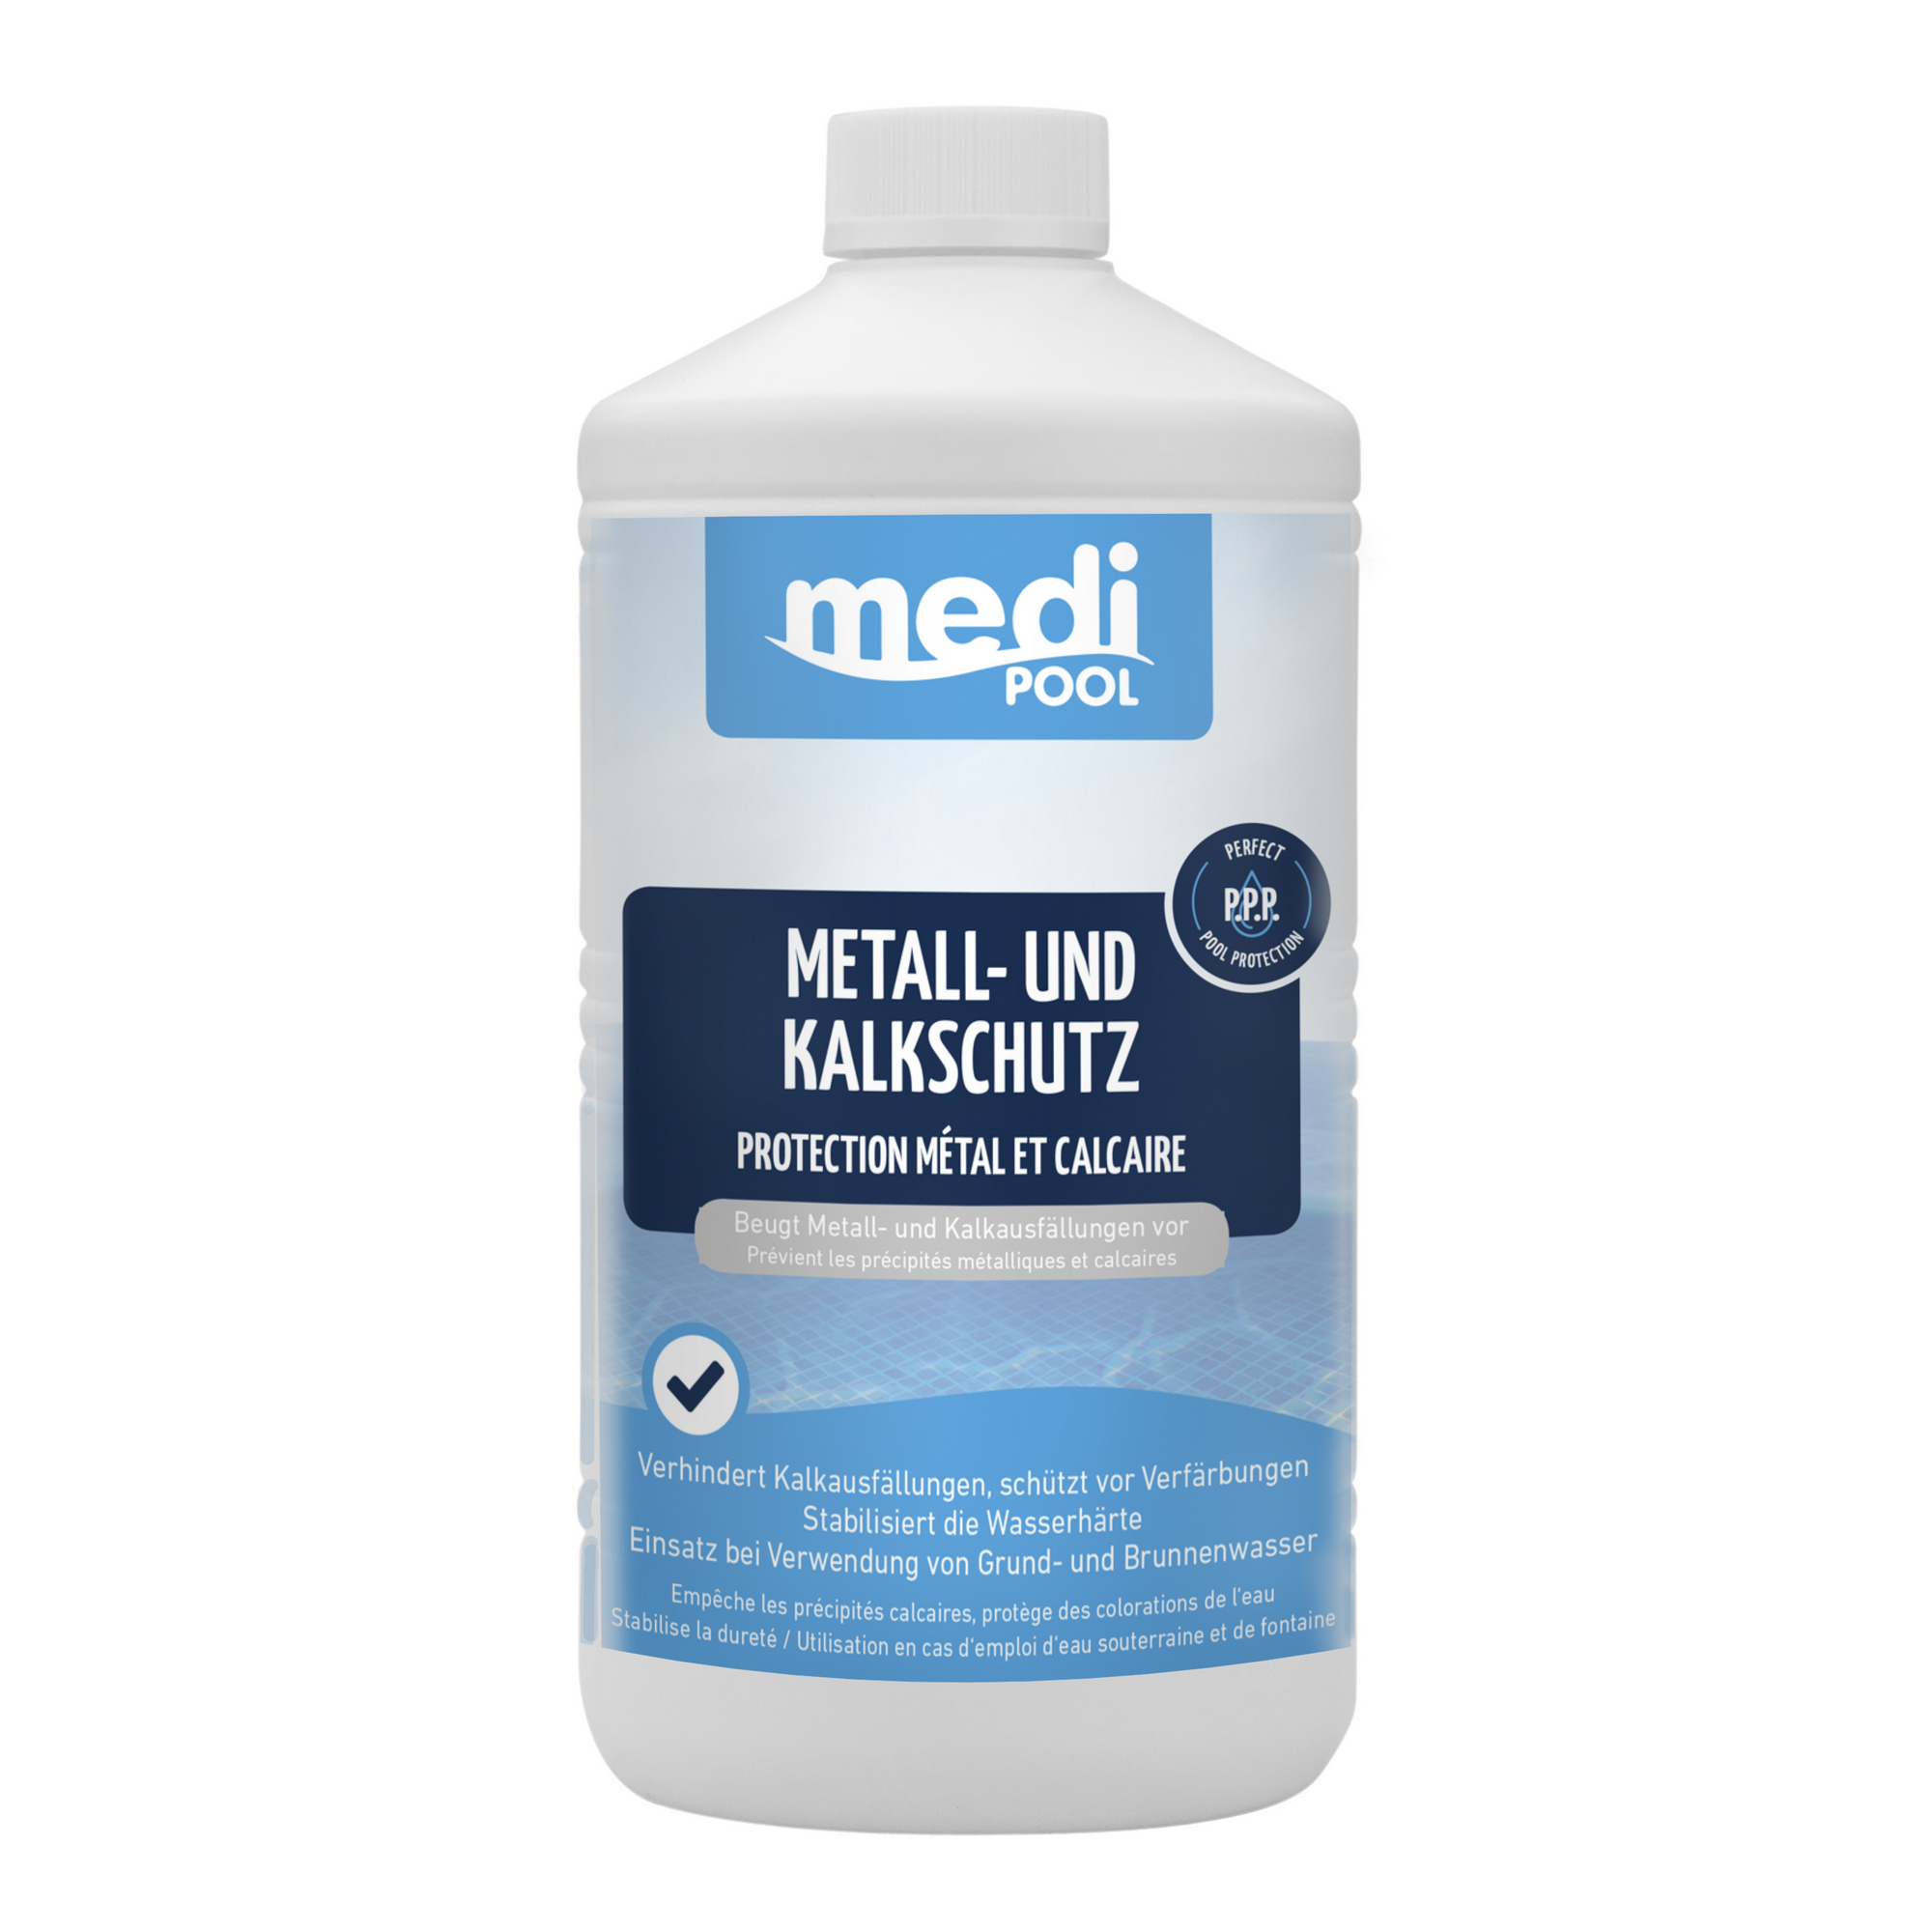 Metall- und Kalkschutz 1 Liter + product picture